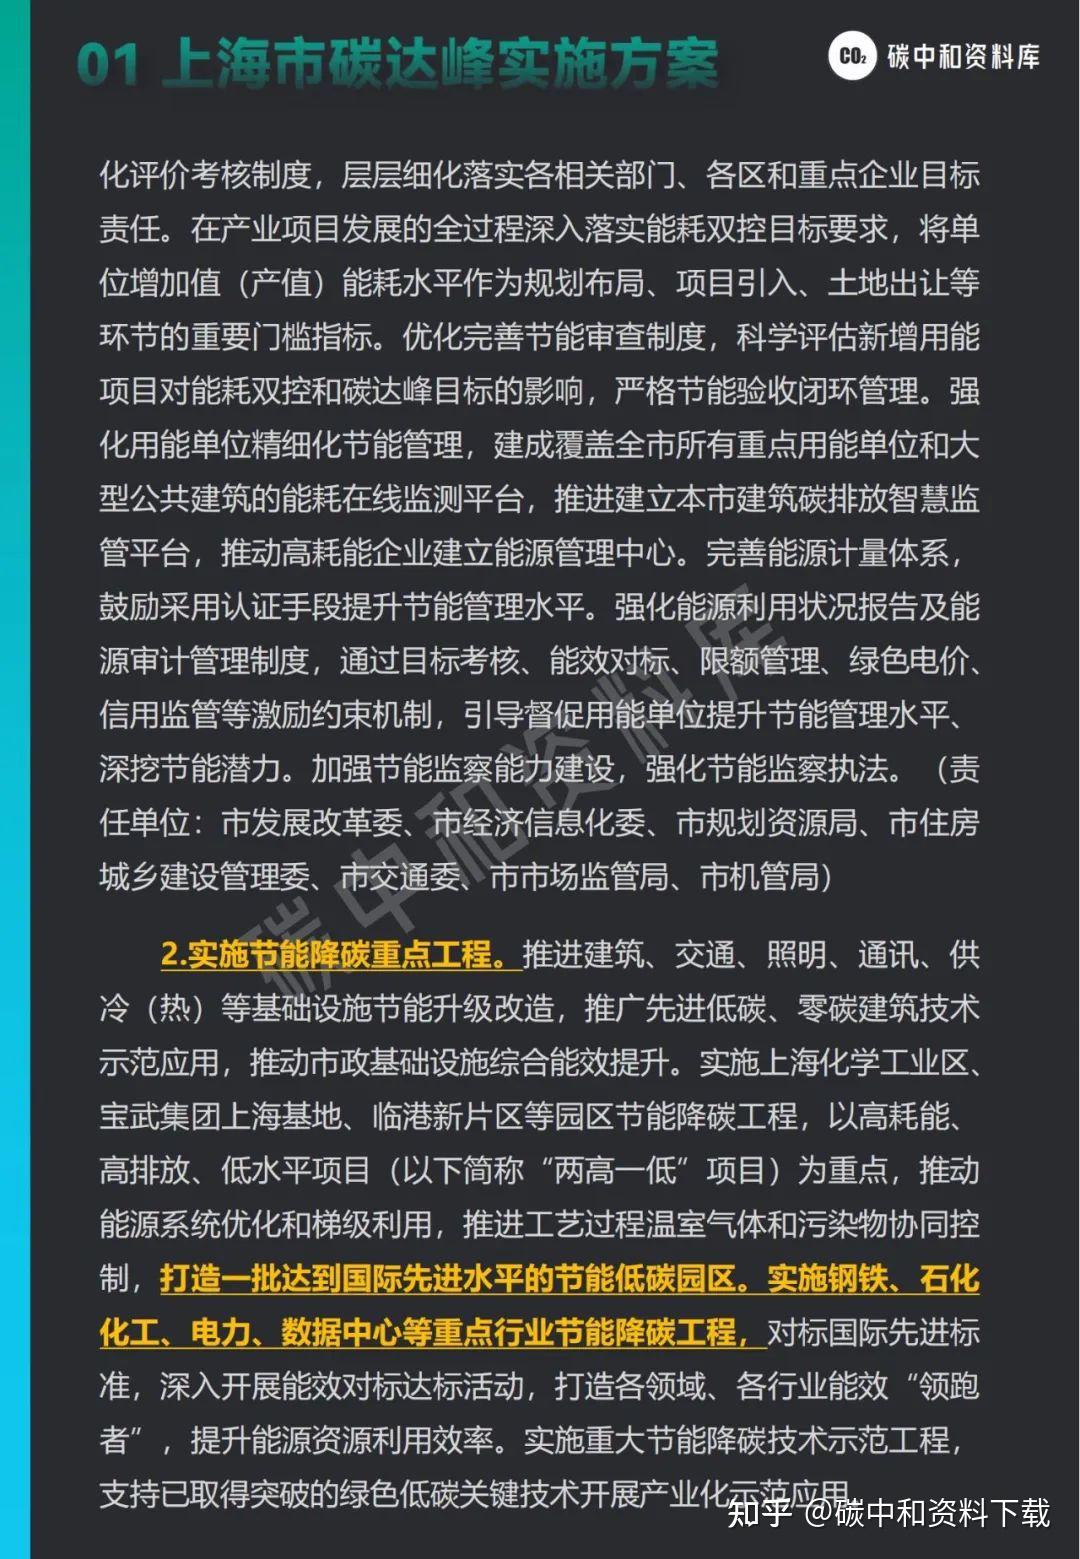 中国石化准入控制客户端中国石化网络应用中心官网-第1张图片-太平洋在线下载